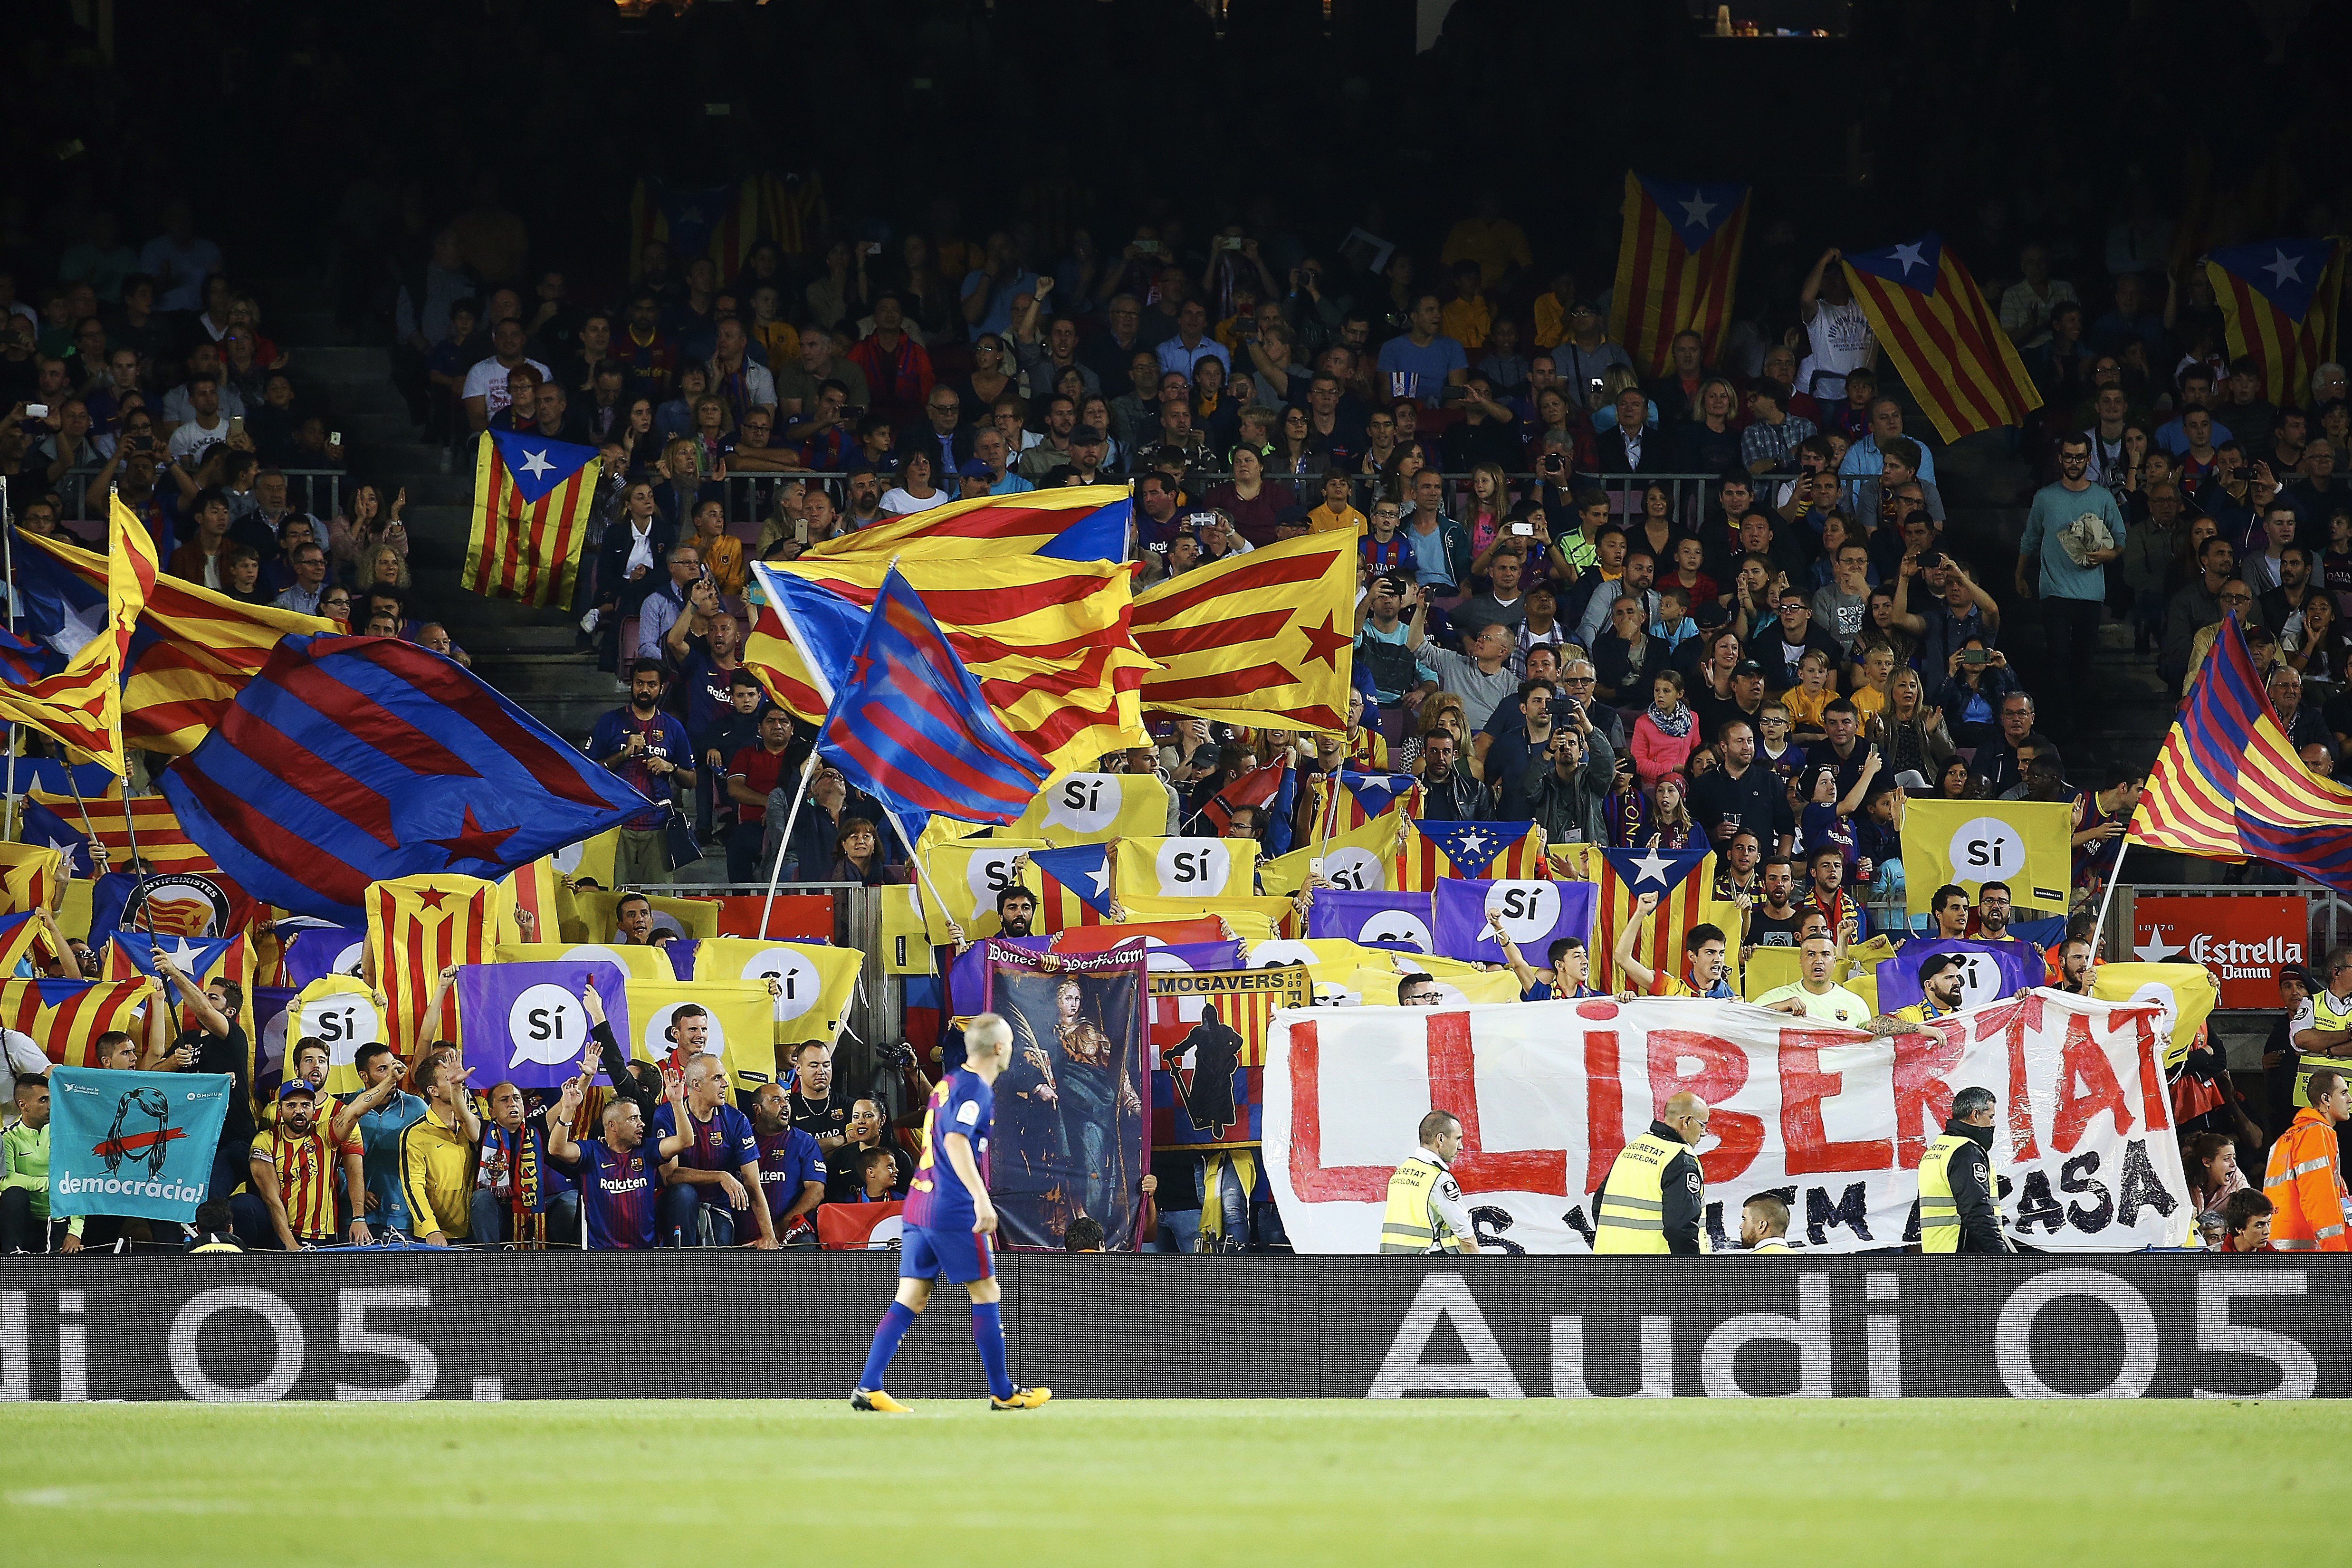 El Camp Nou tornarà a demanar la llibertat dels presos polítics a la Champions